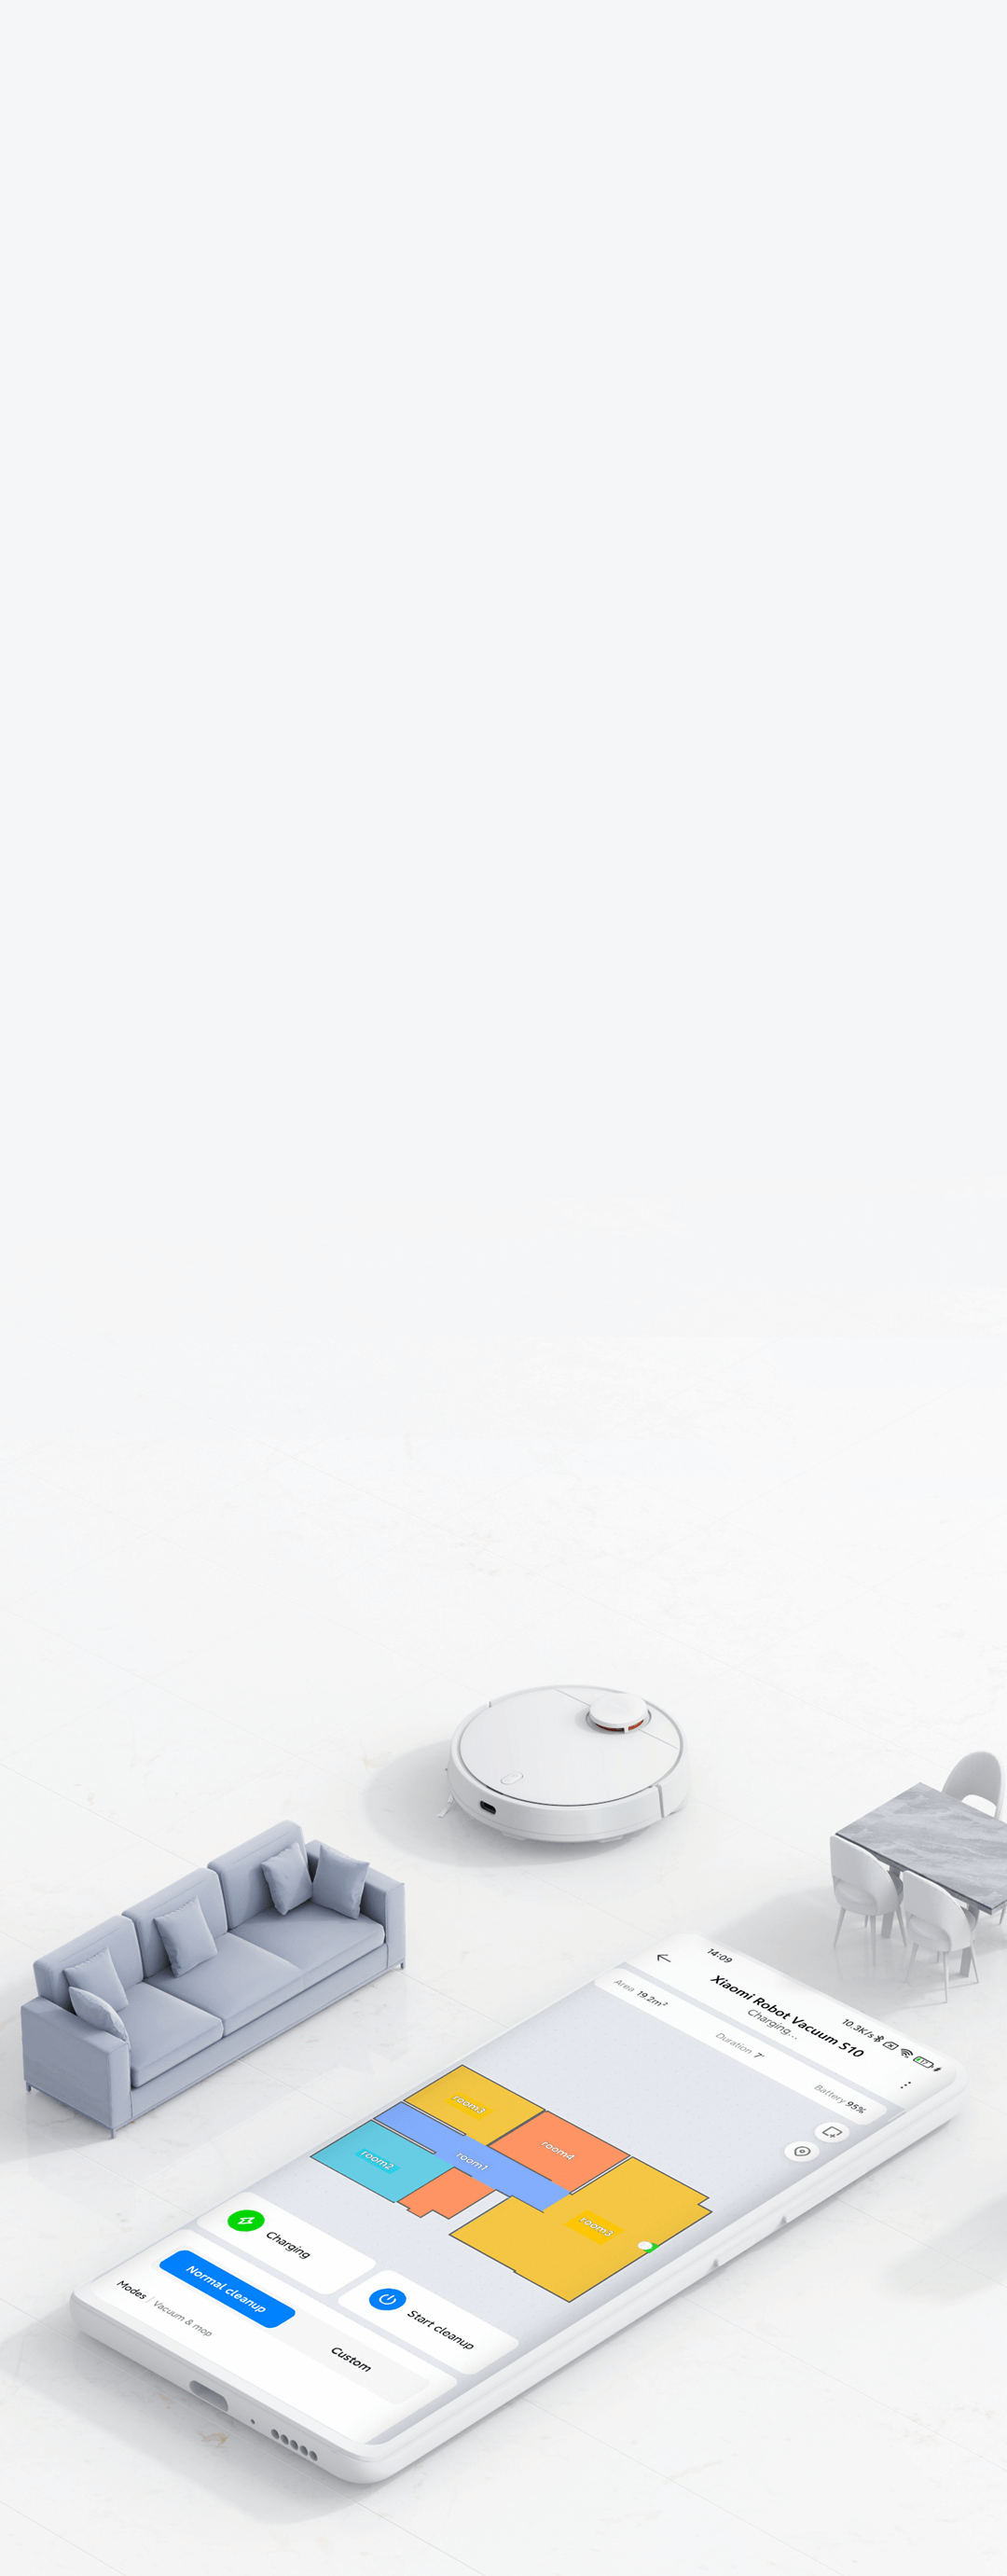 Battery Robot Vacuum Cleaner Xiaomi